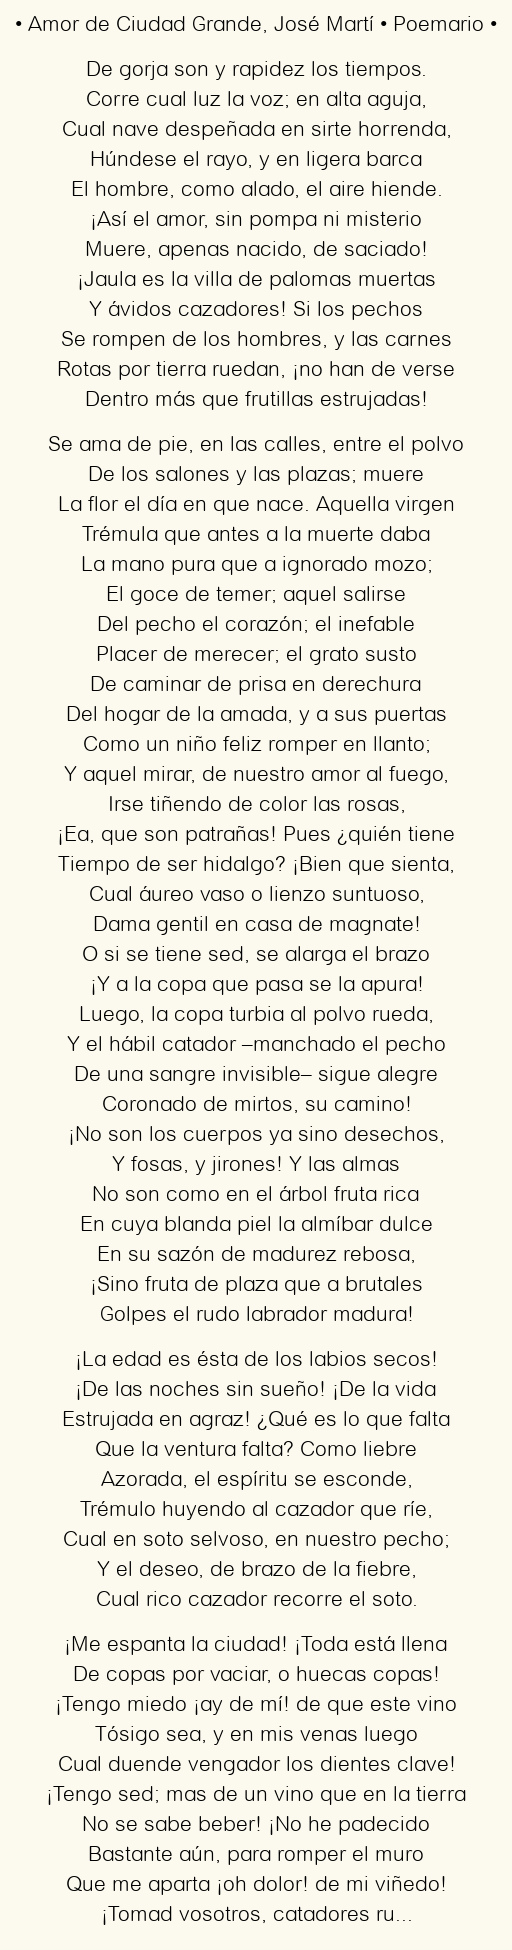 Imagen con el poema Amor de Ciudad Grande, por José Martí